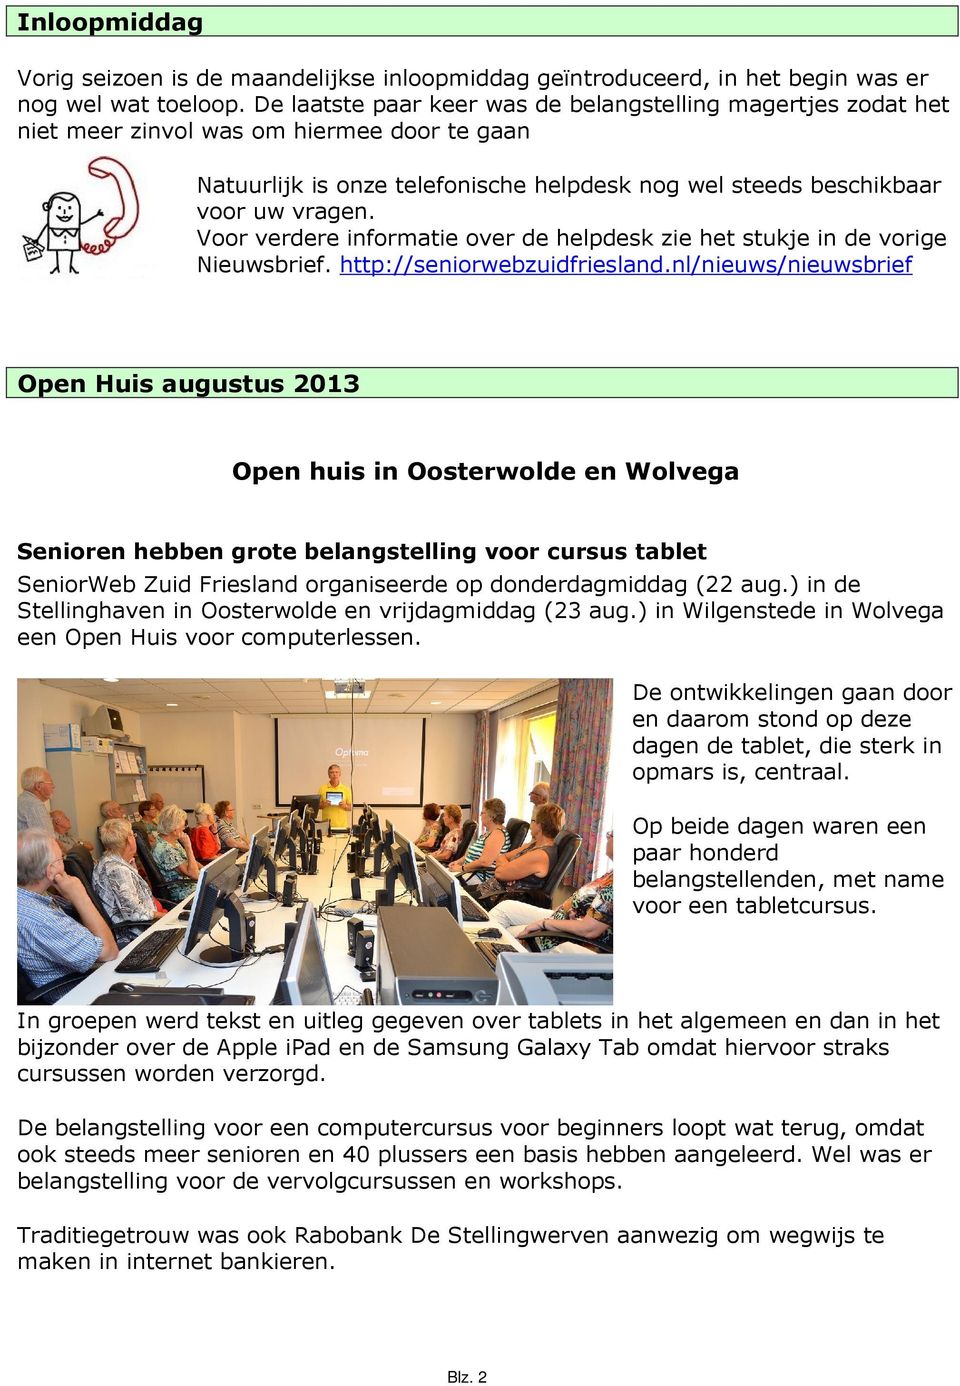 Voor verdere informatie over de helpdesk zie het stukje in de vorige Nieuwsbrief. http://seniorwebzuidfriesland.